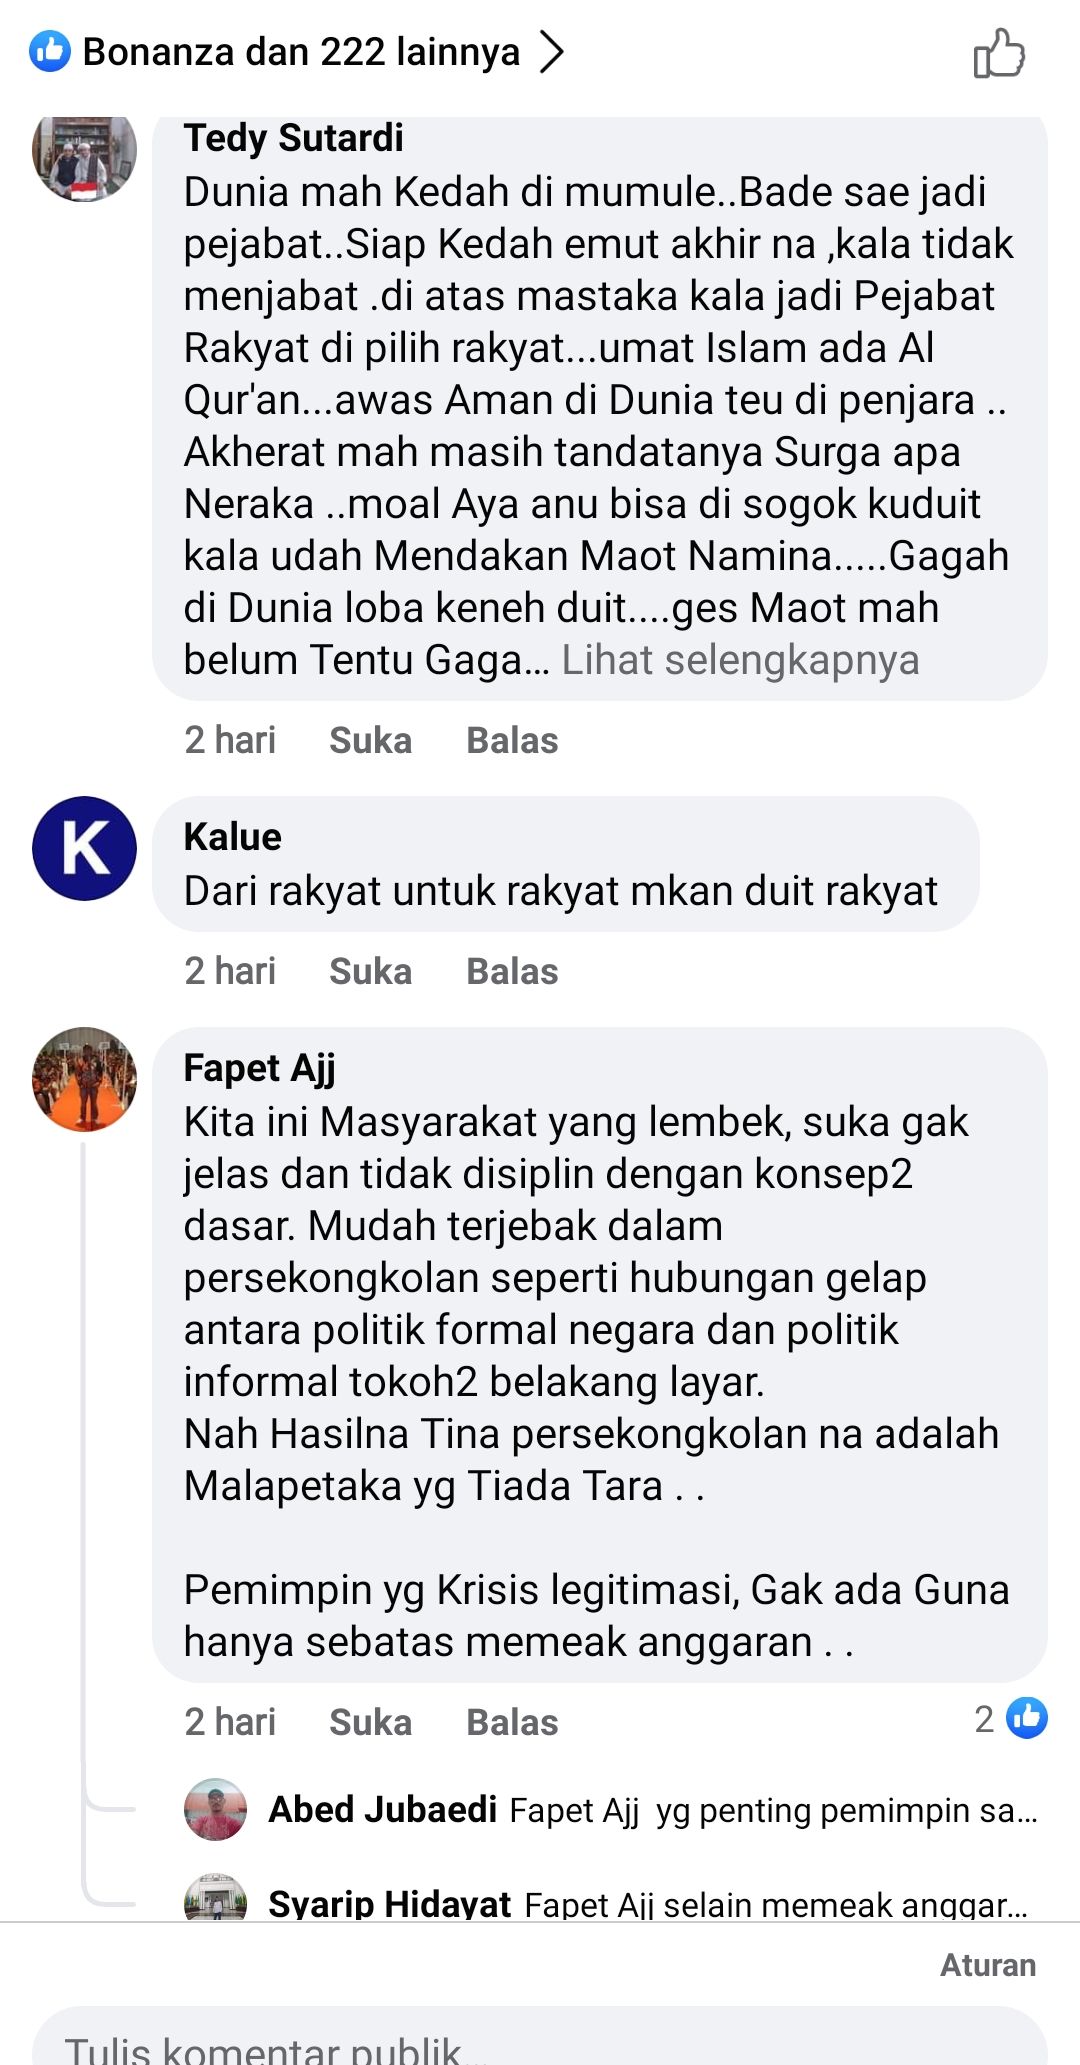 Beberapa komentar warganet yang terlihat mengkritisi postingan Ketua DPRD Purwakarta.